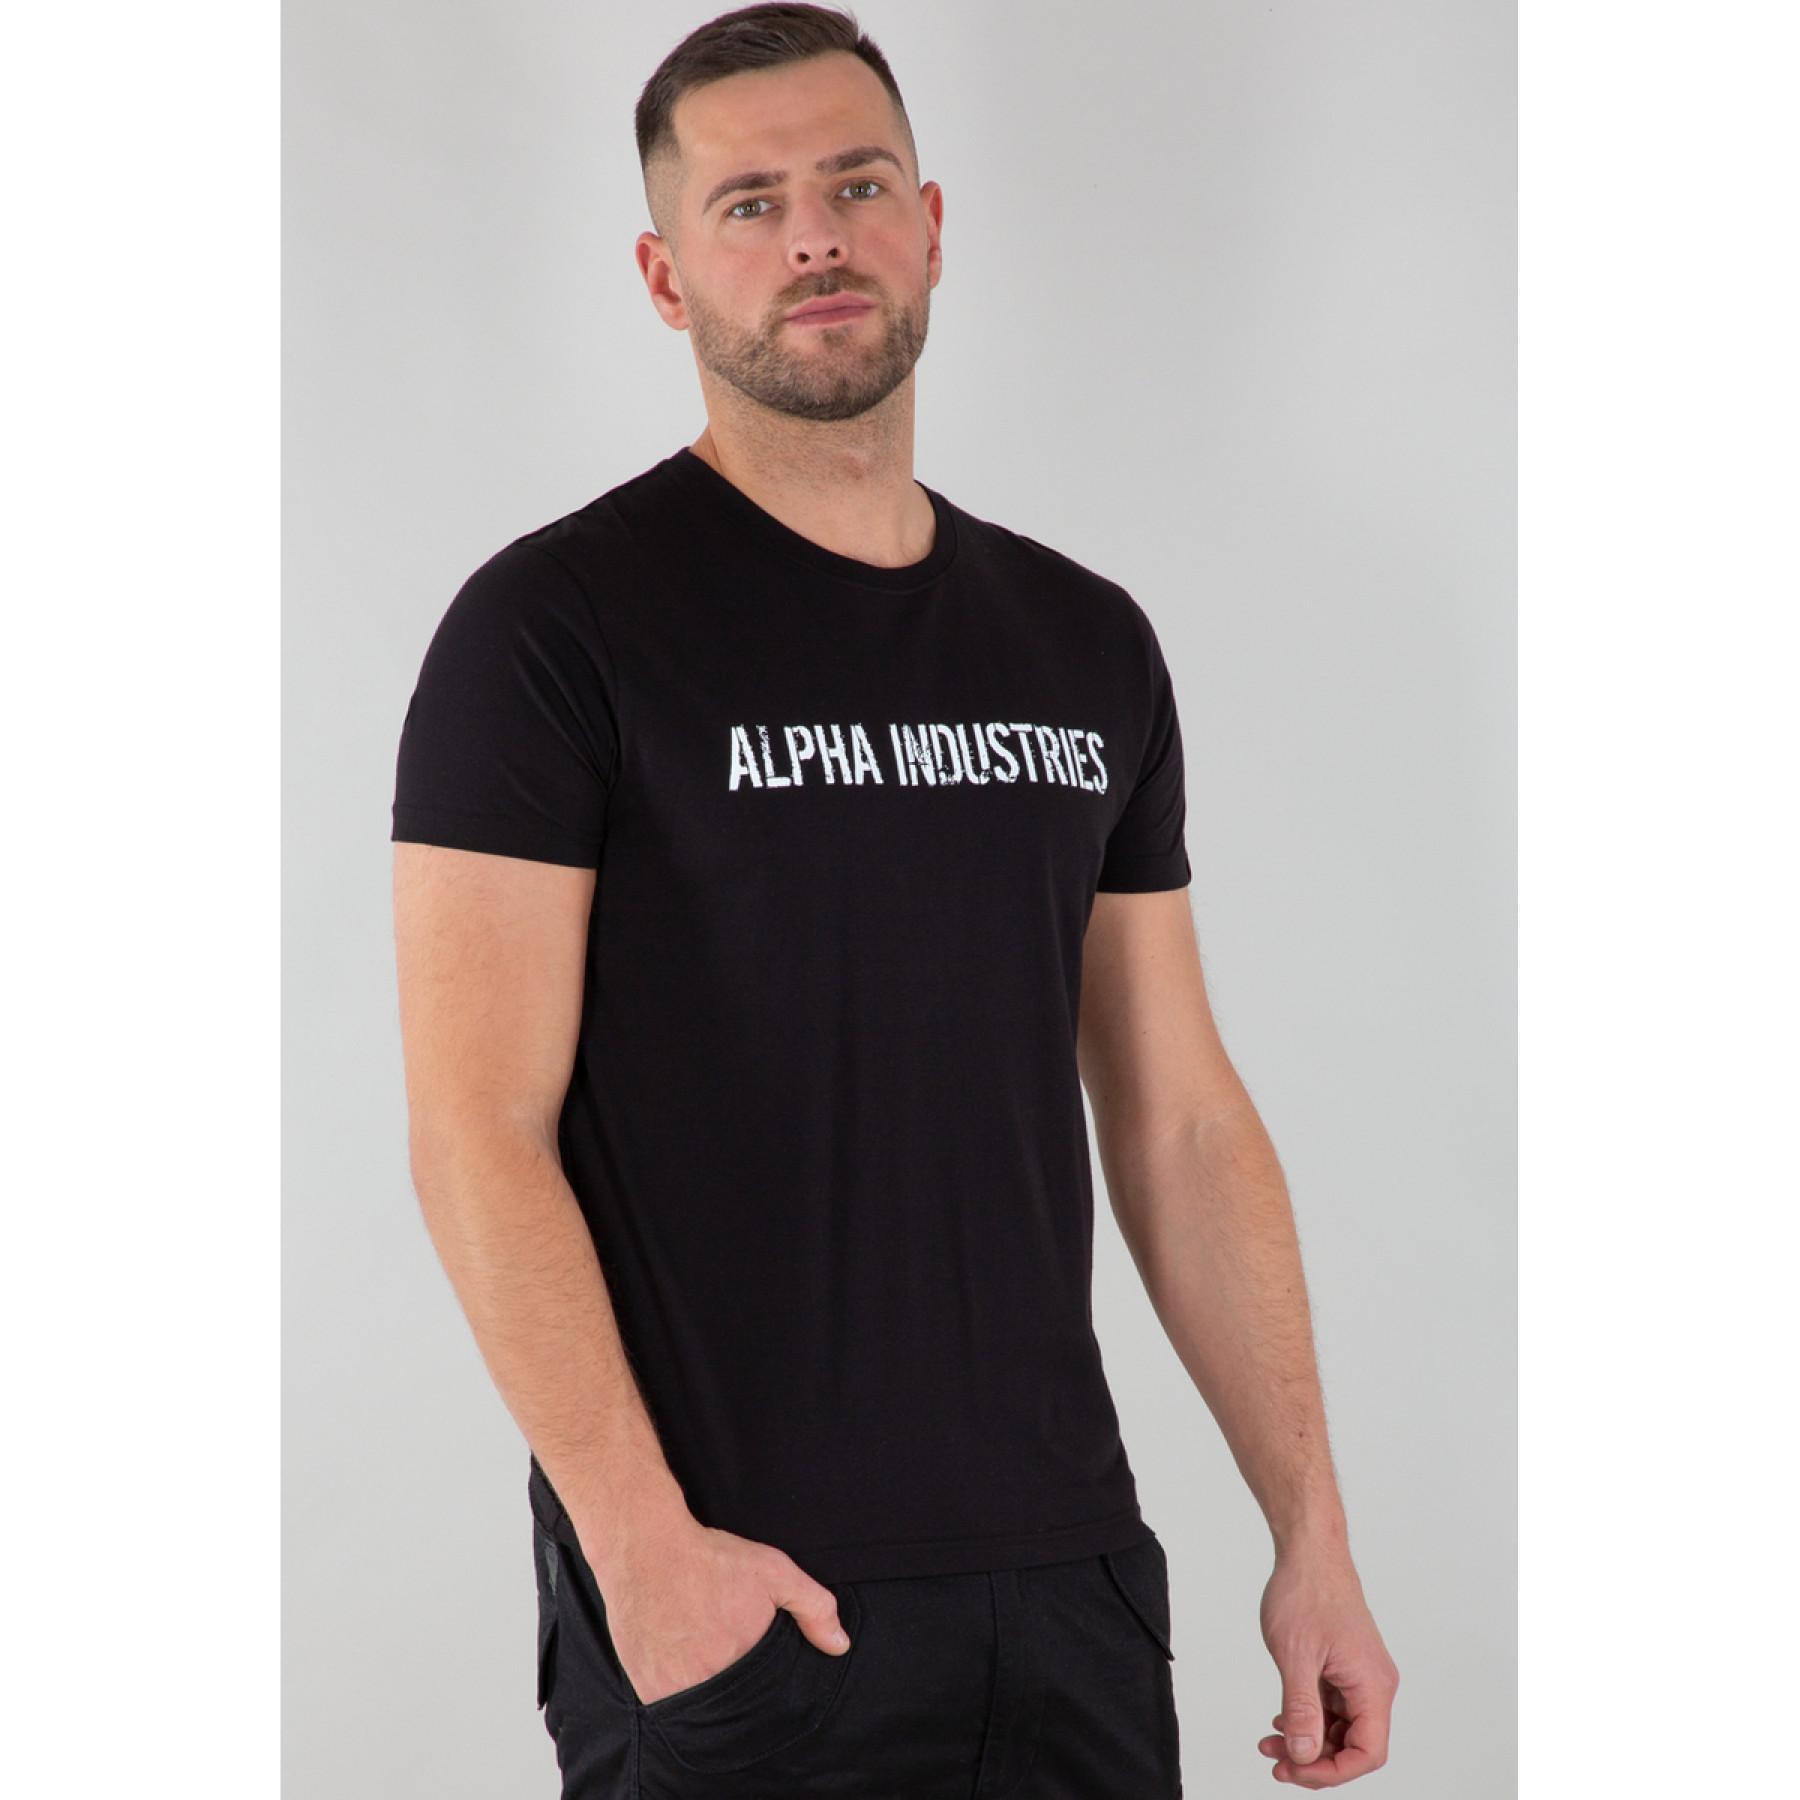 - Industries - T-shirt Alpha Streetwear Men - Moto RBF T-Shirts